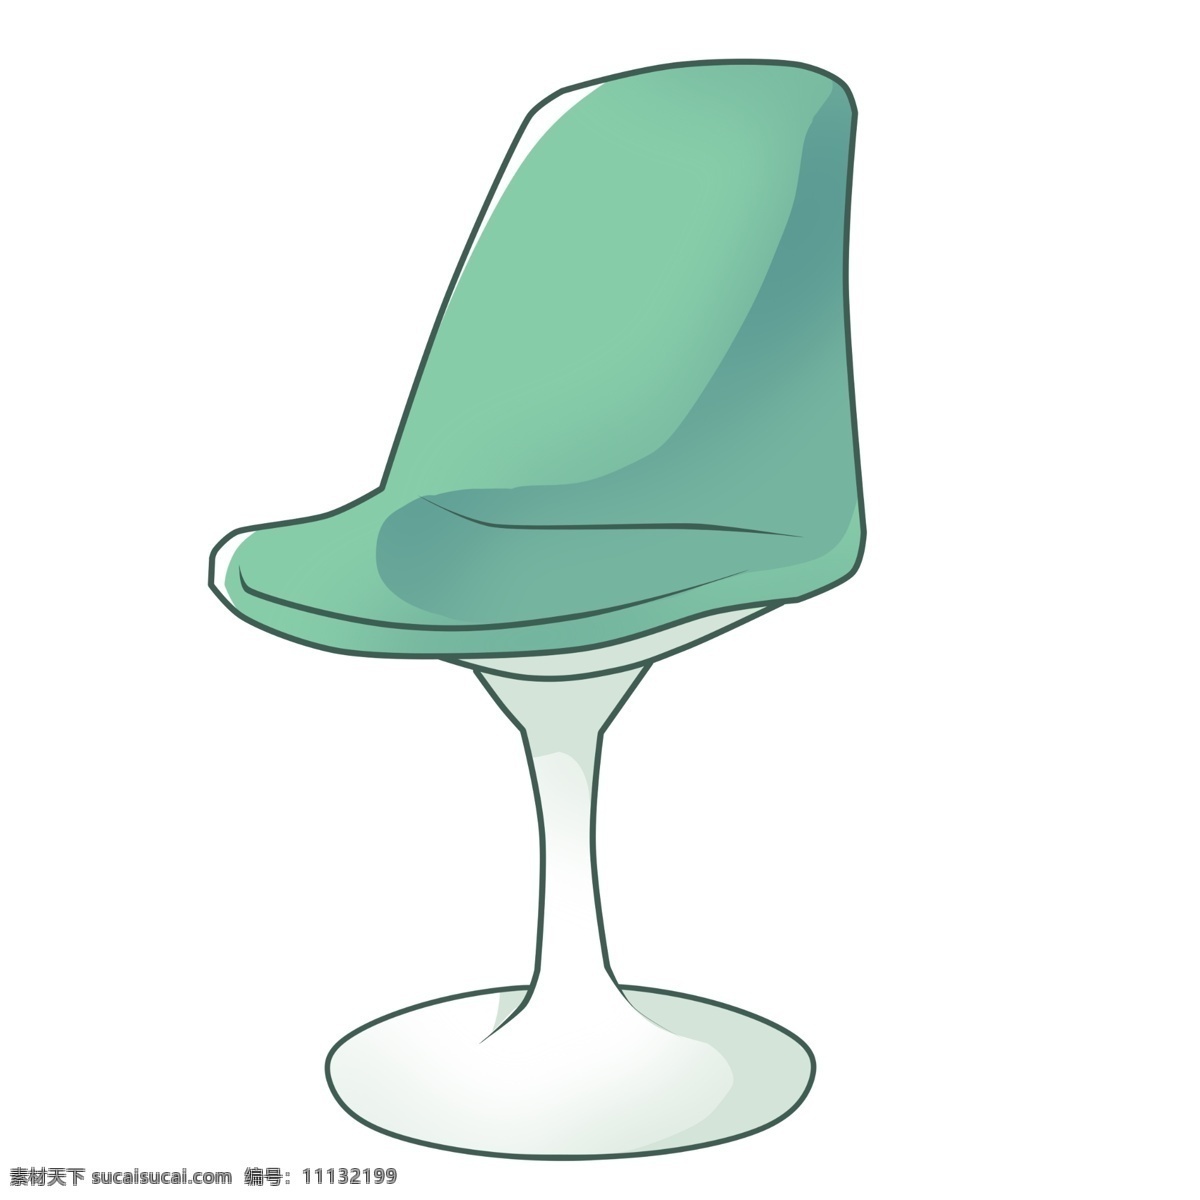 绿色 旋转 椅子 插画 靠背椅子 创意椅子 绿色旋转椅子 圆形椅子 靠背椅子插图 一把靠背椅子 家具